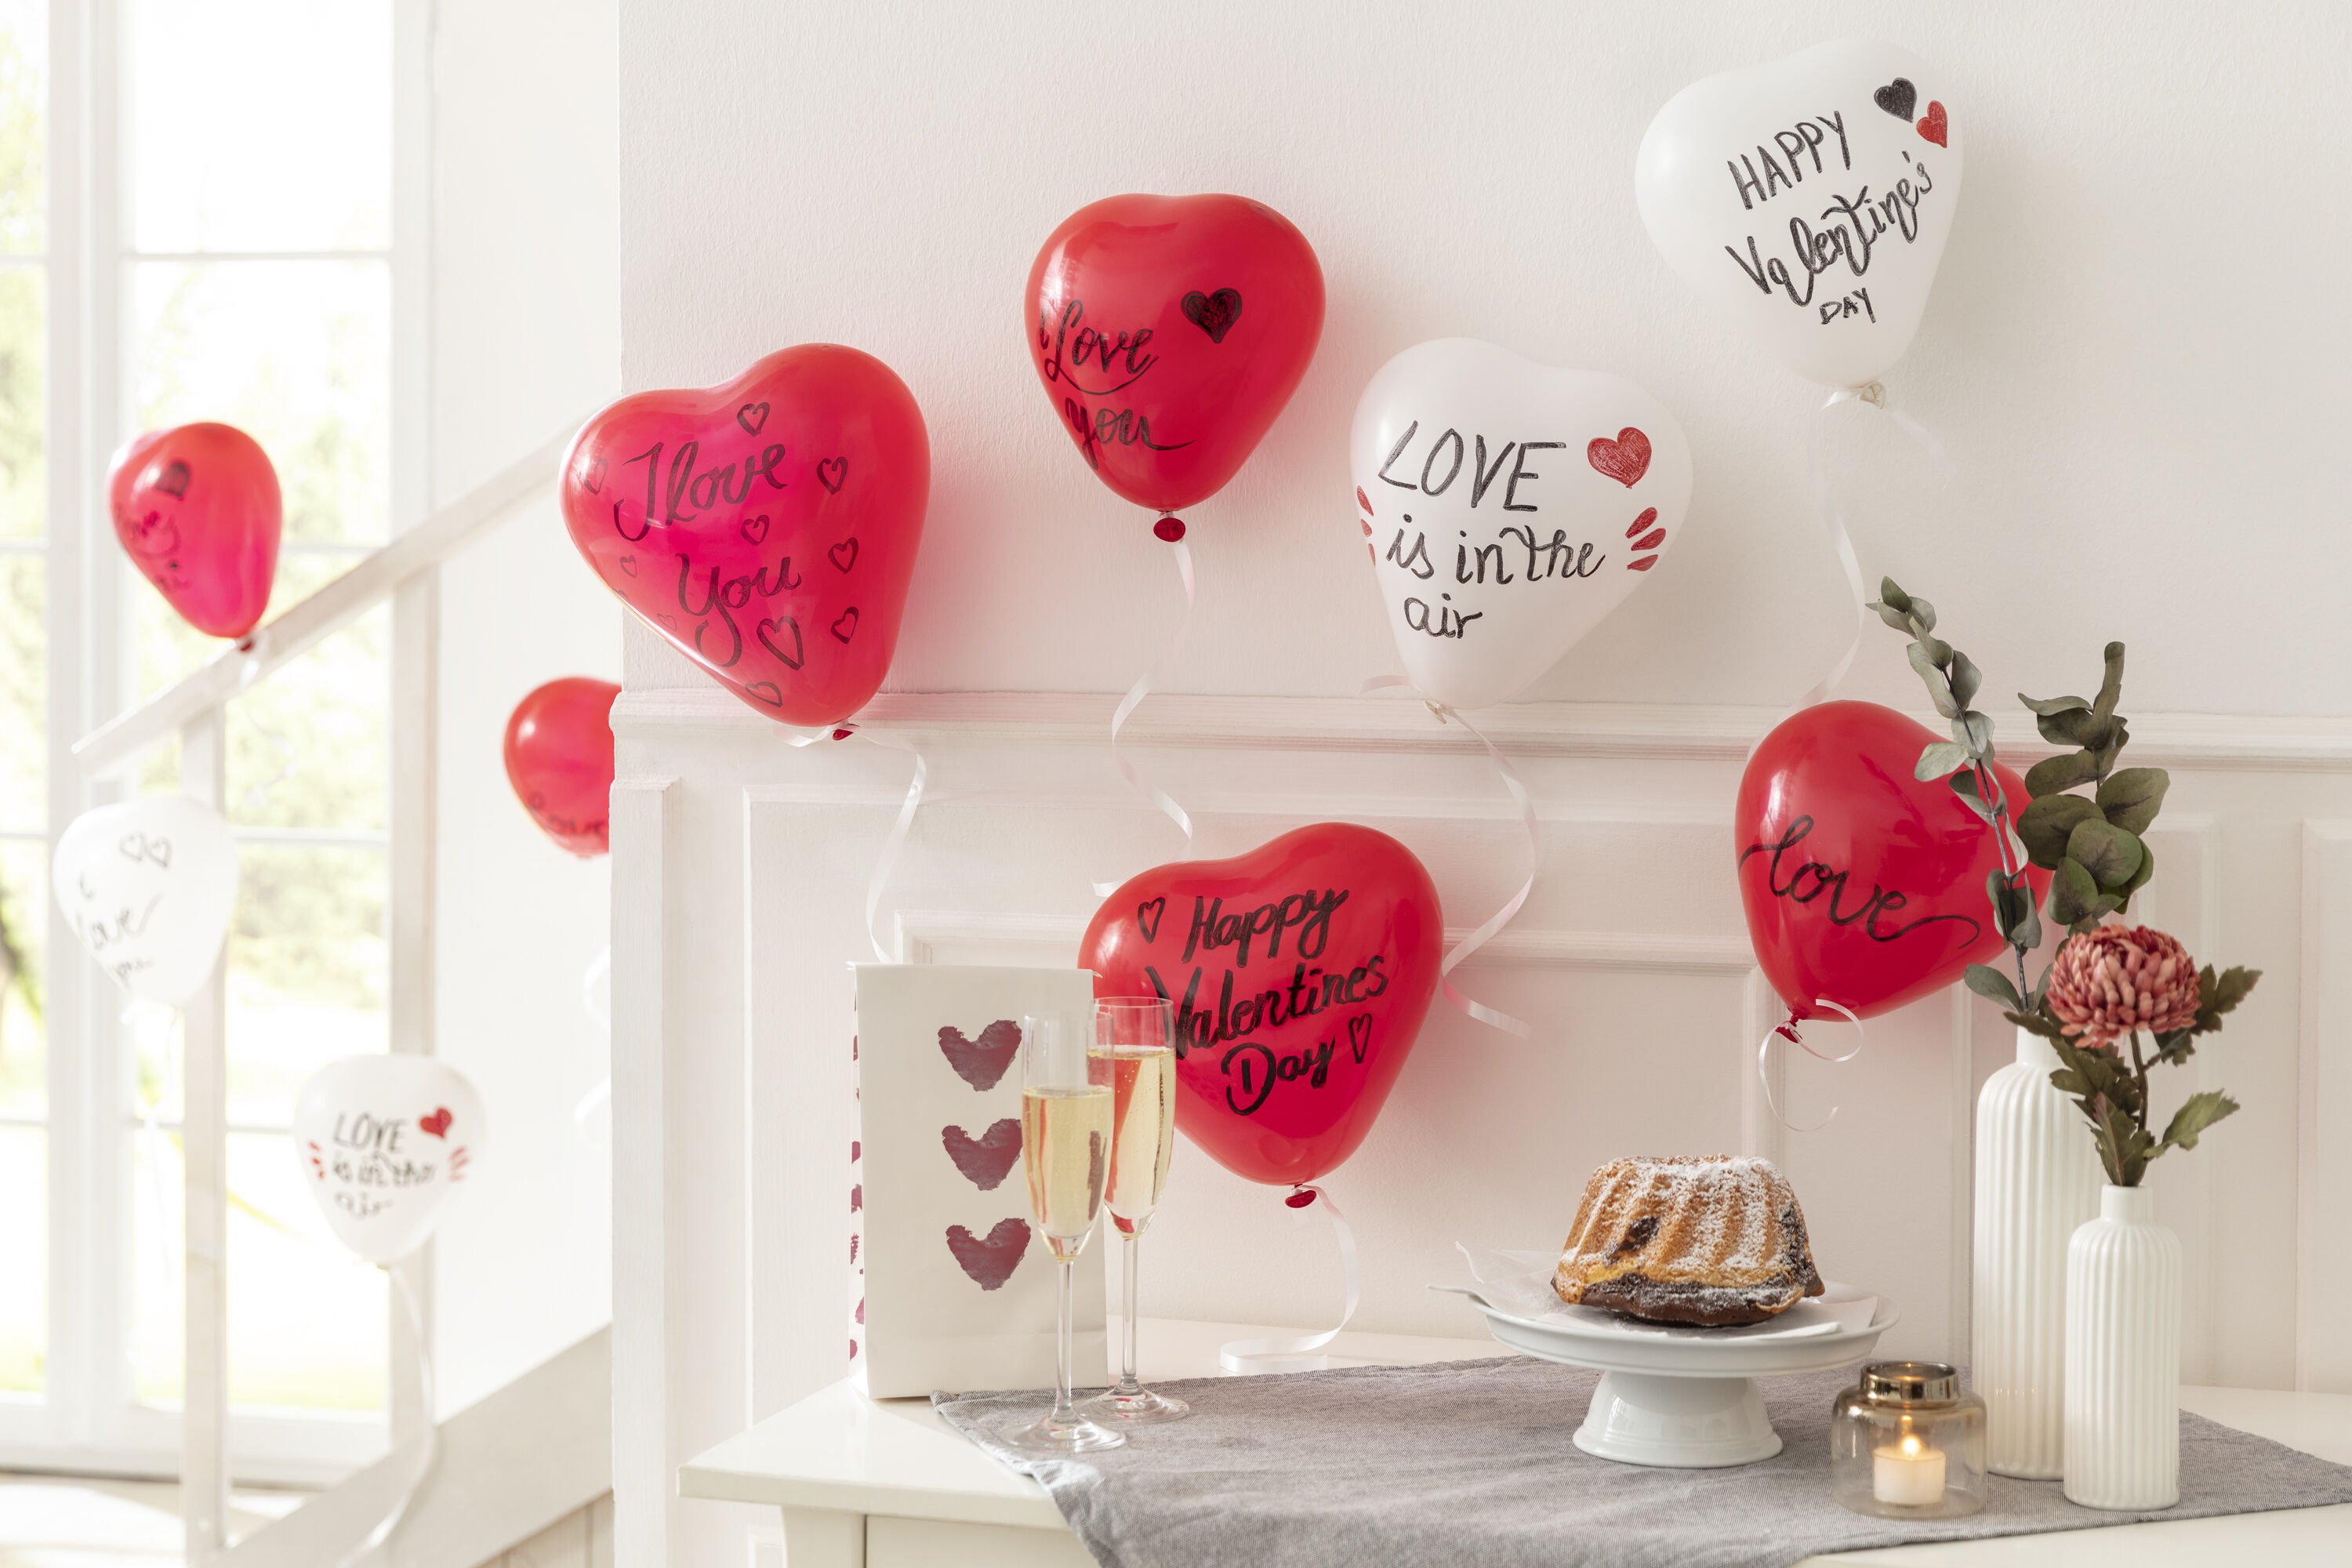 Ballons Lettres Saint-Valentin - Déco Ballons Amour 